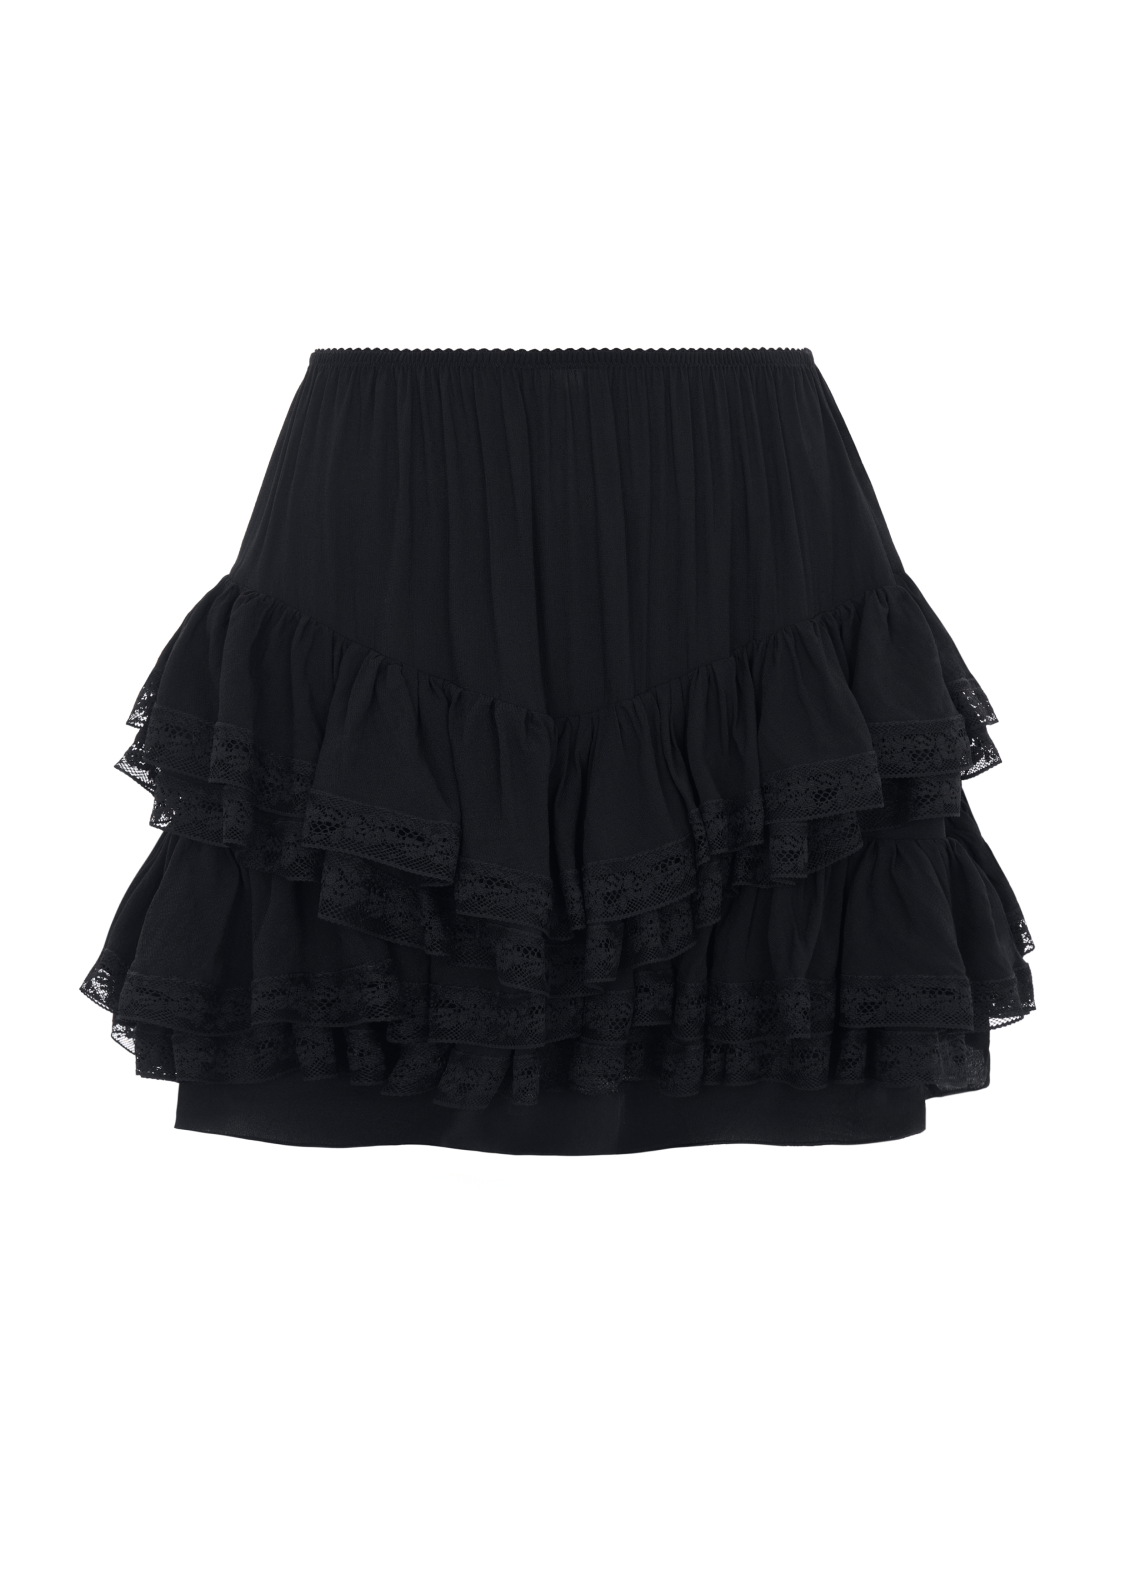 Ruffled skirt in black